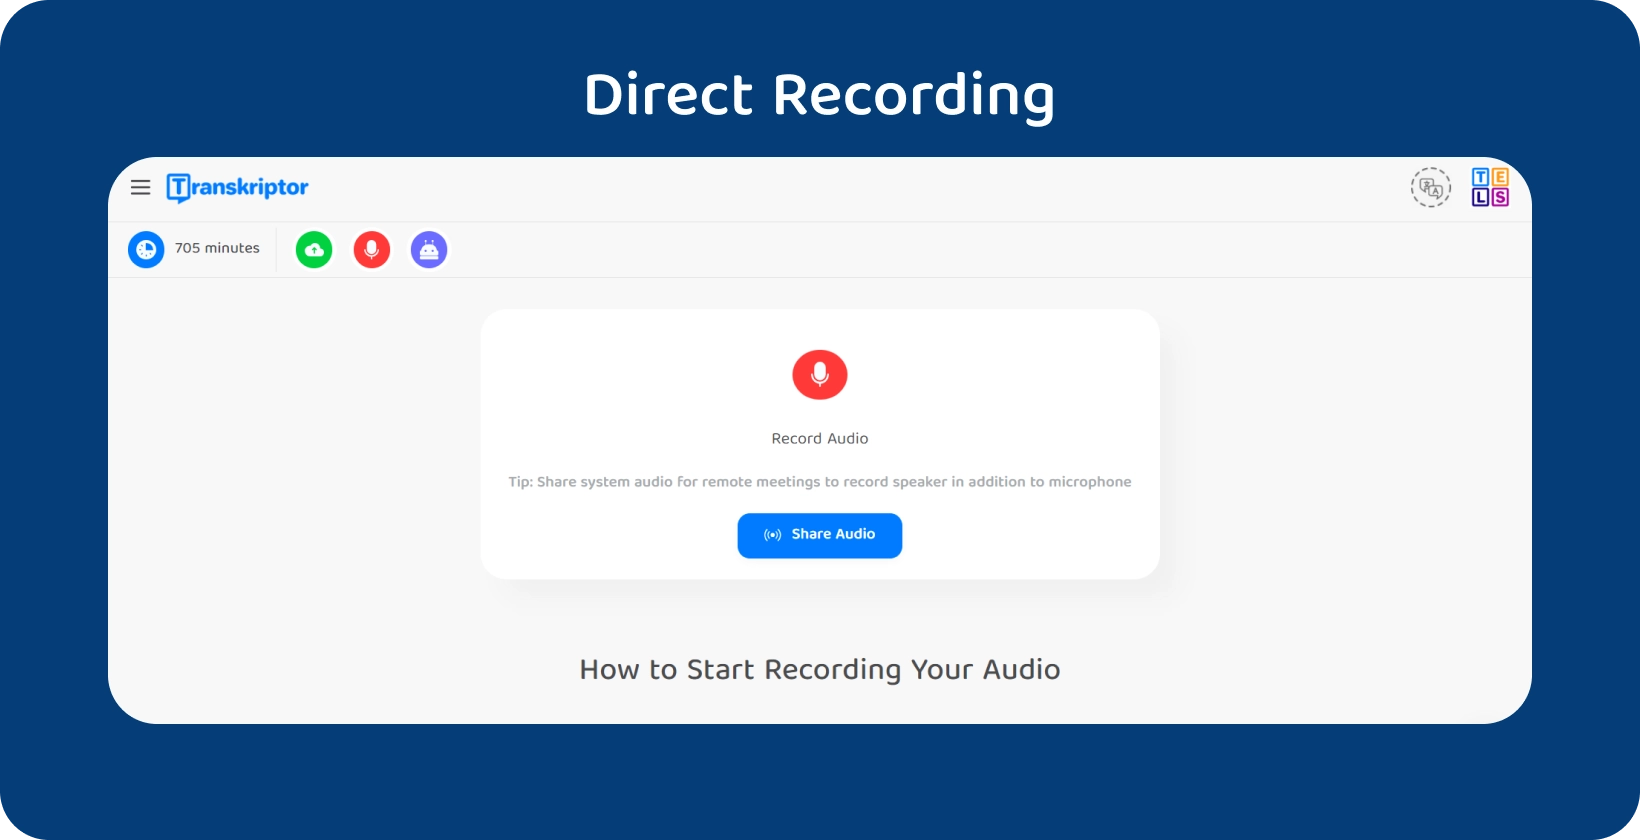 Funkce přímého nahrávání zvuku v Transkriptor pro rozhovory s kvalitativním výzkumem s kapacitou 705 minut.